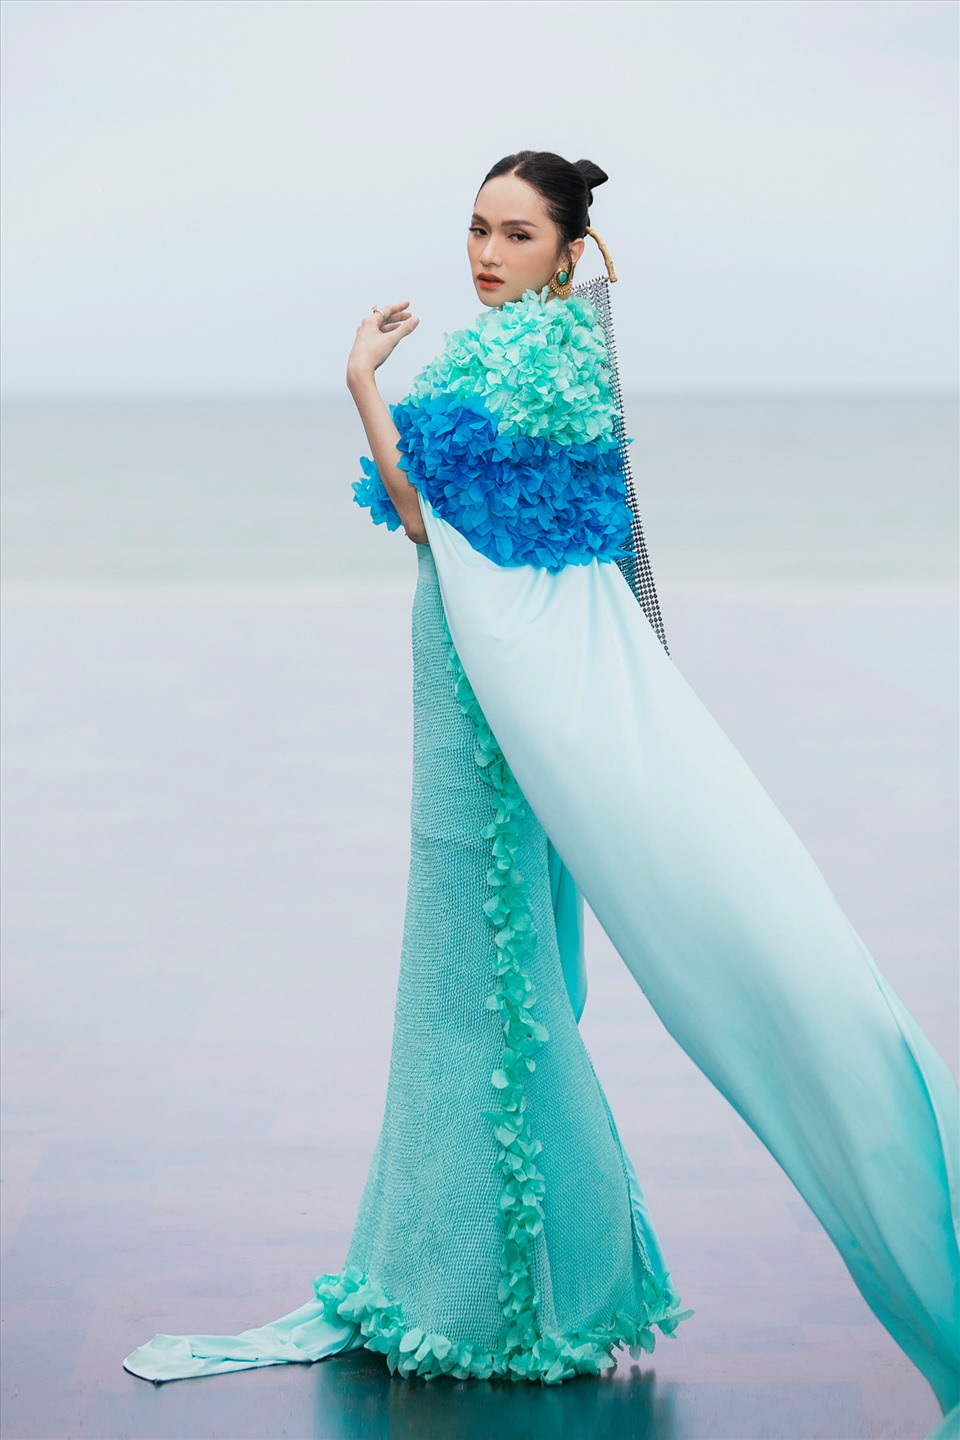 Tại Tuần lễ thời trang trẻ em 2022, Hương Giang xuất hiện như một nữ hoàng biển xanh với bước chân tự tin và gương mặt thần thái. Ảnh: Kiếng Cận.